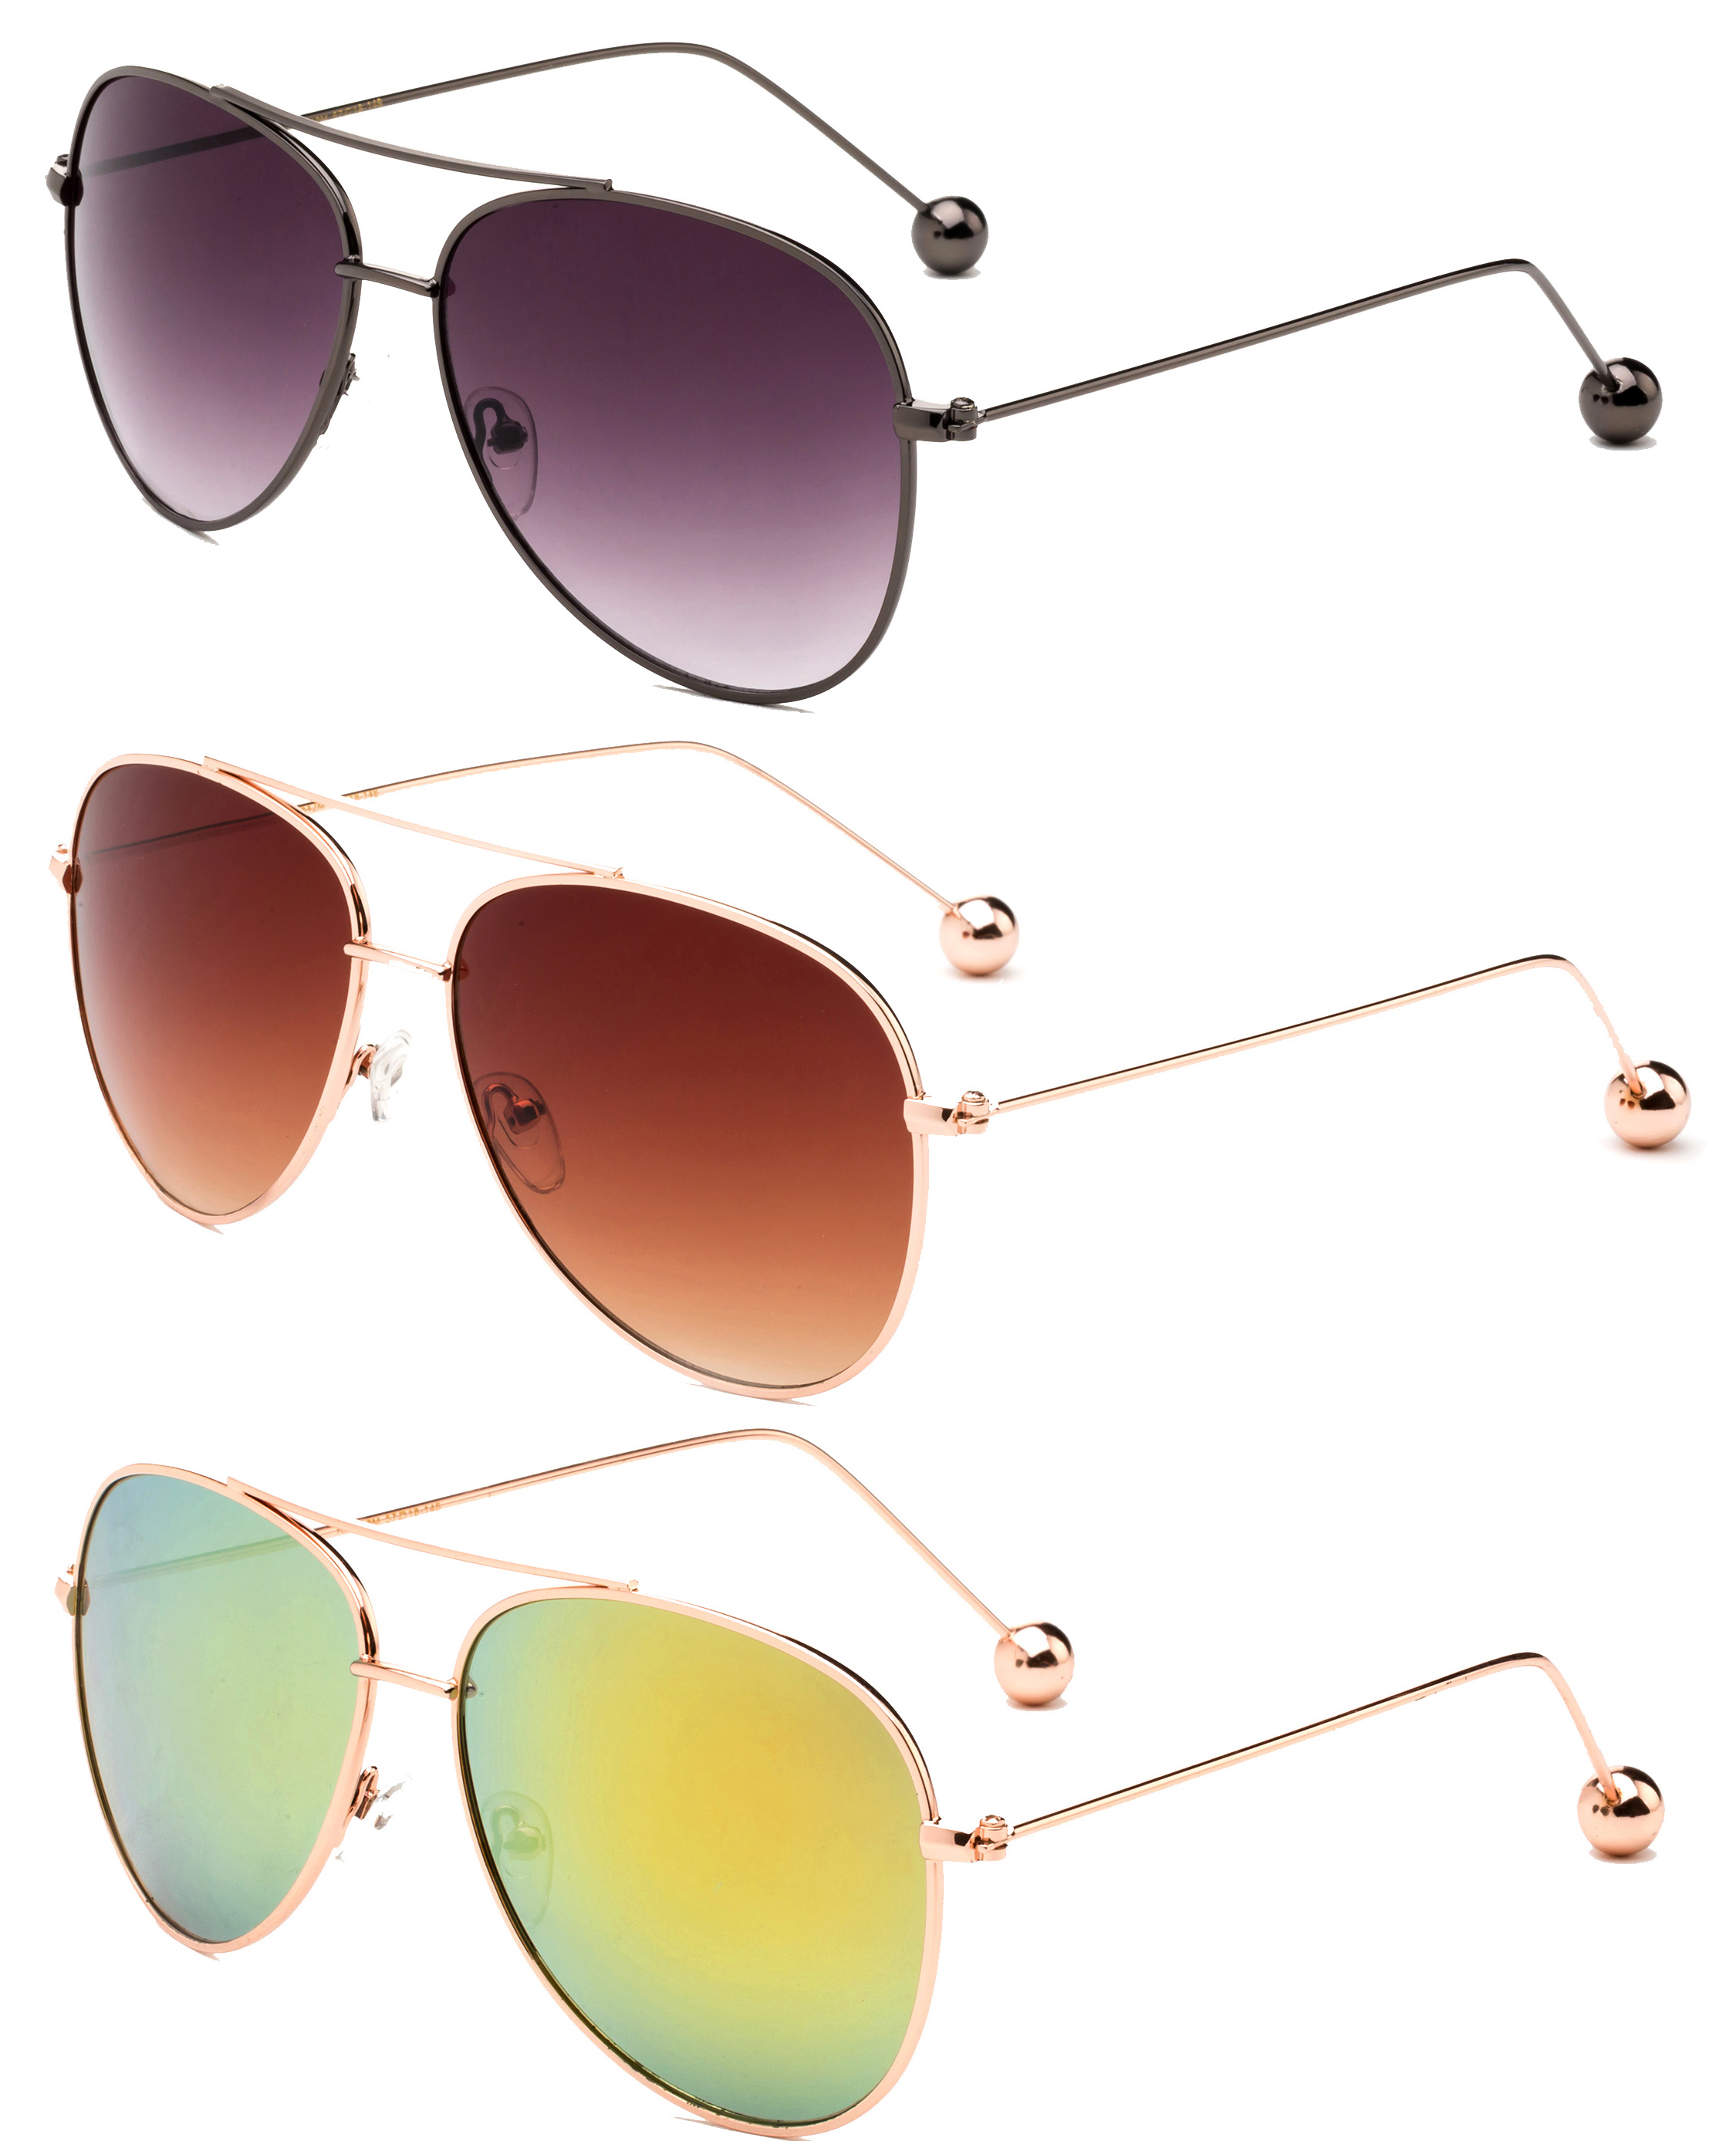 3 Pack Aviator Metal Frame Metal Ball Tip Fashion Sunglasses for Women for Men, Black Smoke, Gunmetal, Brown & Orange - image 2 of 2